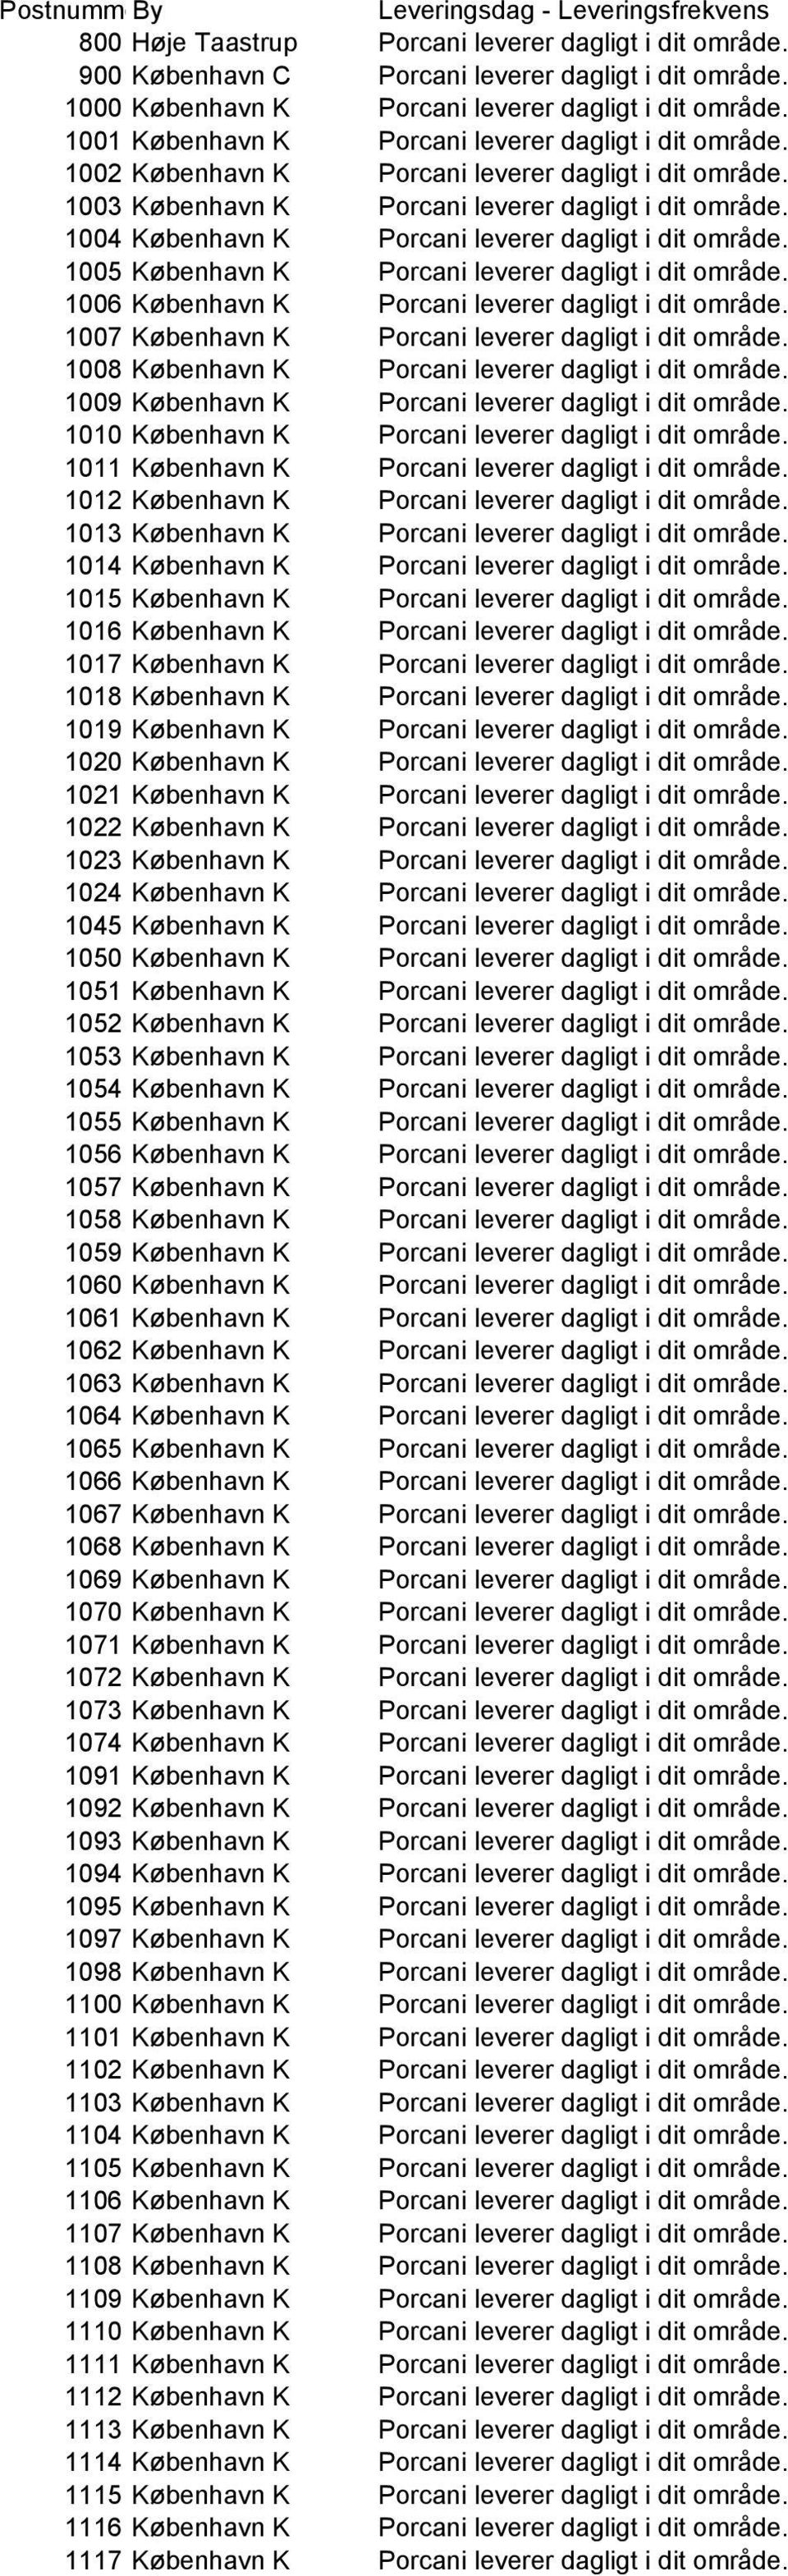 1003 København K Porcani leverer dagligt i dit område. 1004 København K Porcani leverer dagligt i dit område. 1005 København K Porcani leverer dagligt i dit område.